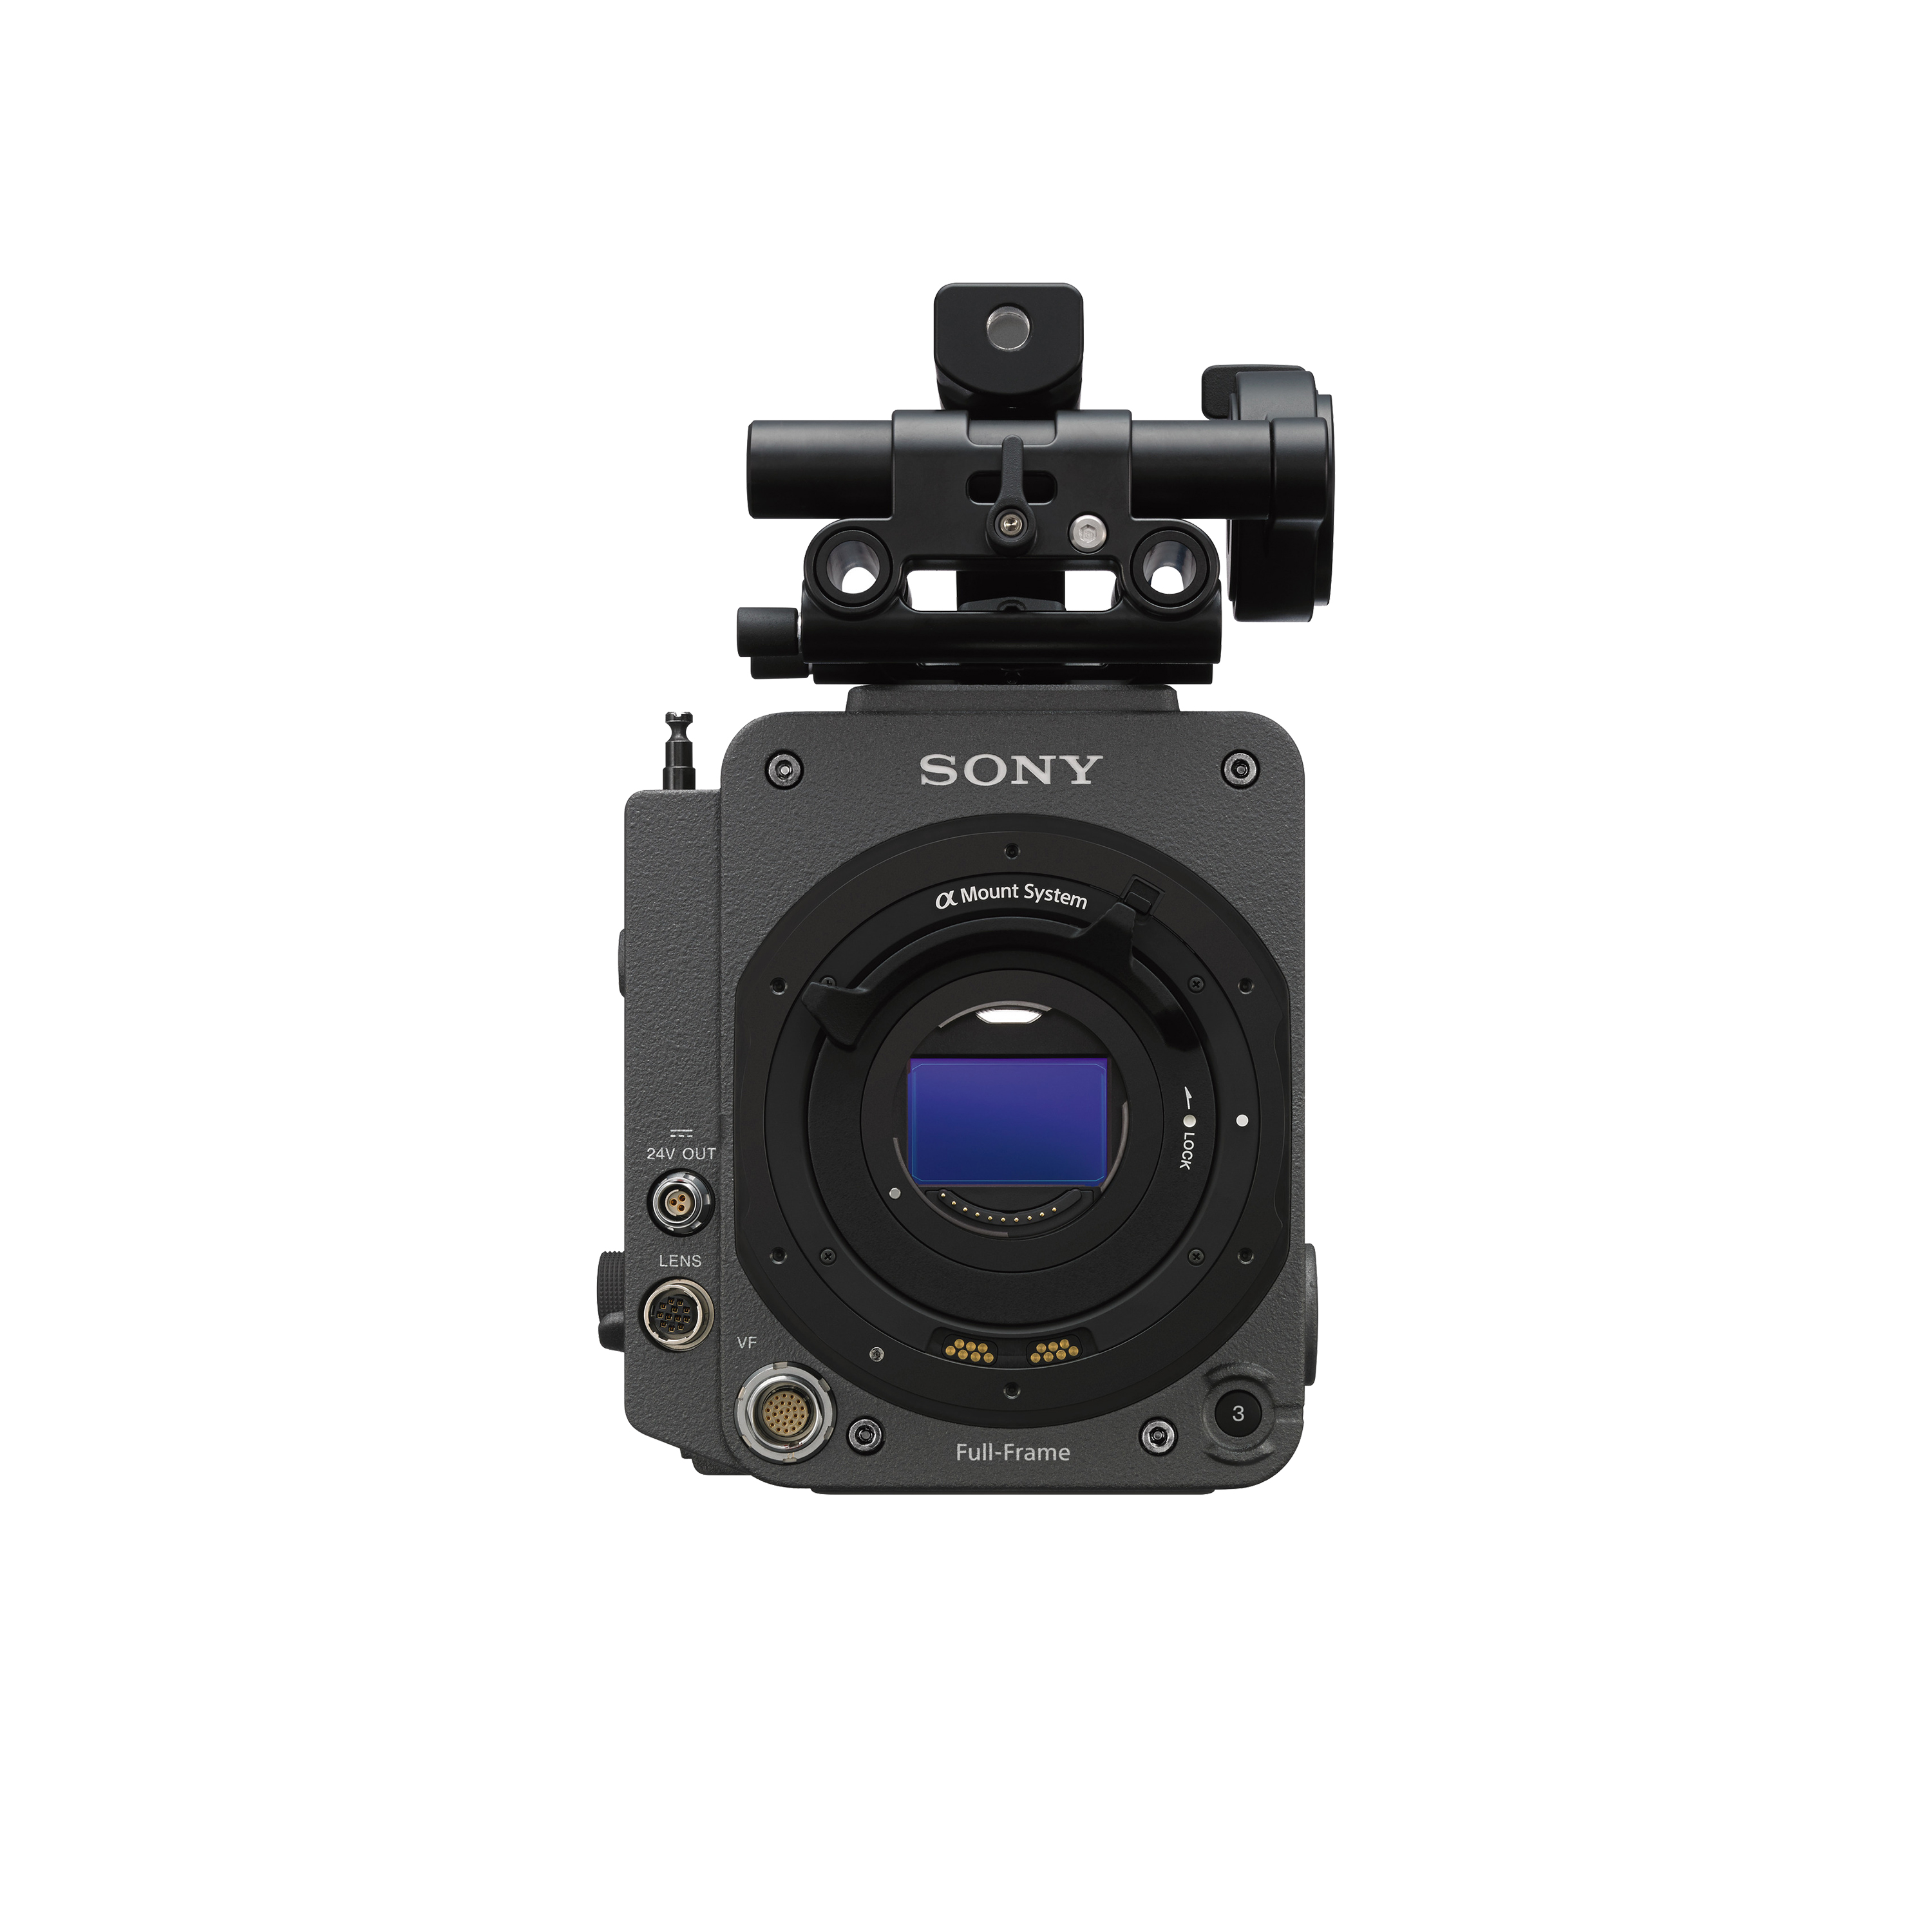 MPC-3610電影攝影機正面圖